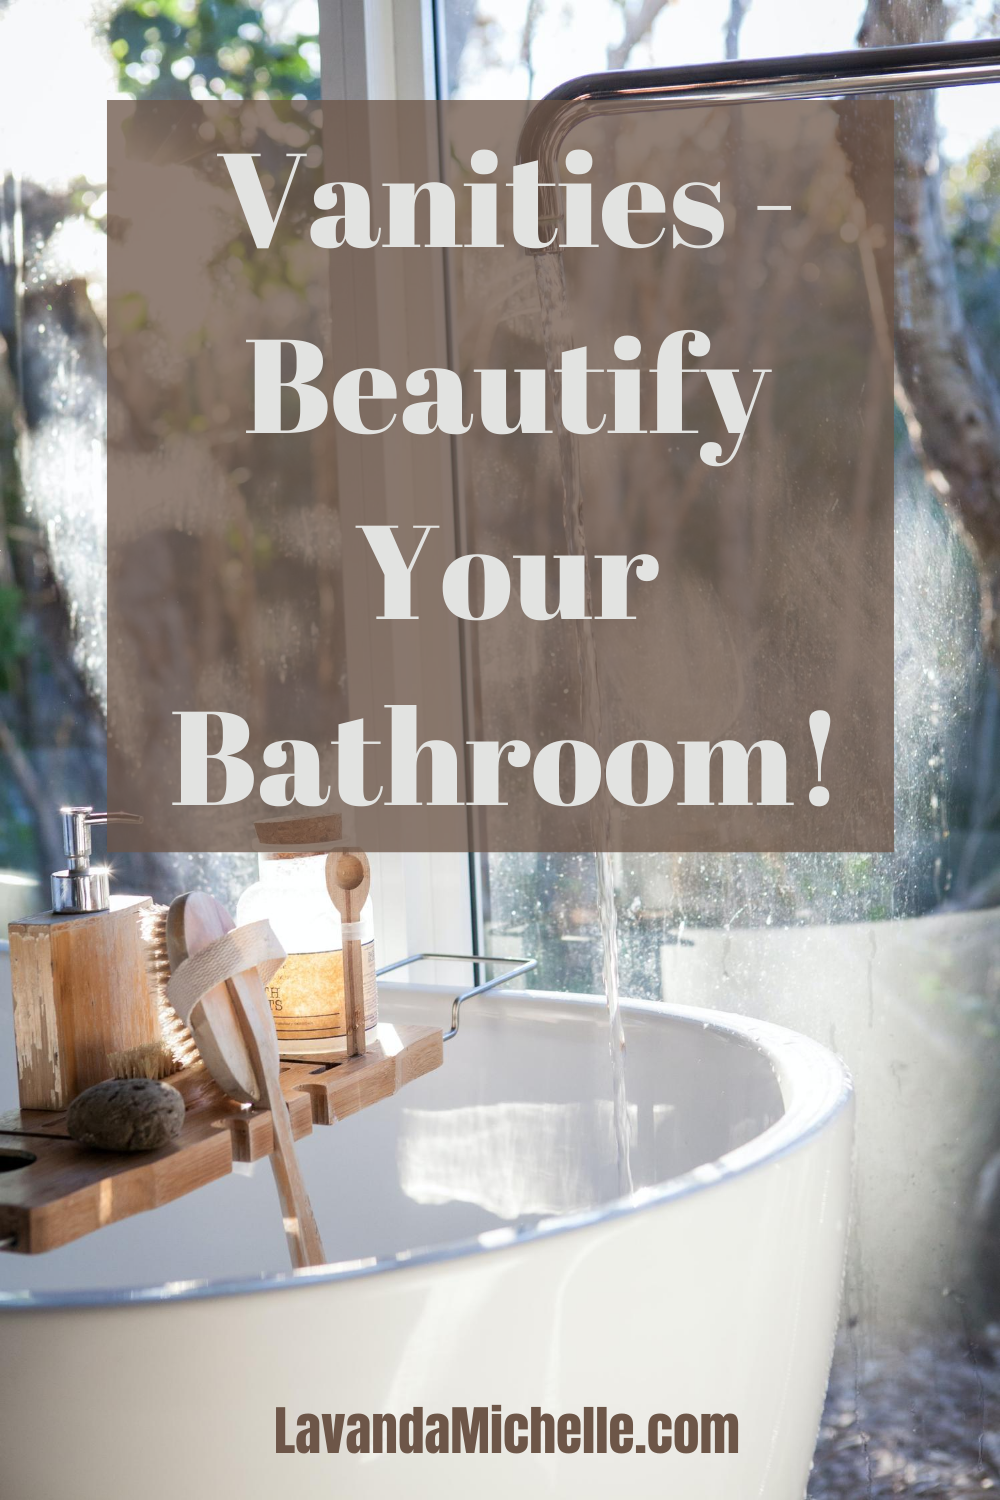 Vanities - Beautify Your Bathroom!